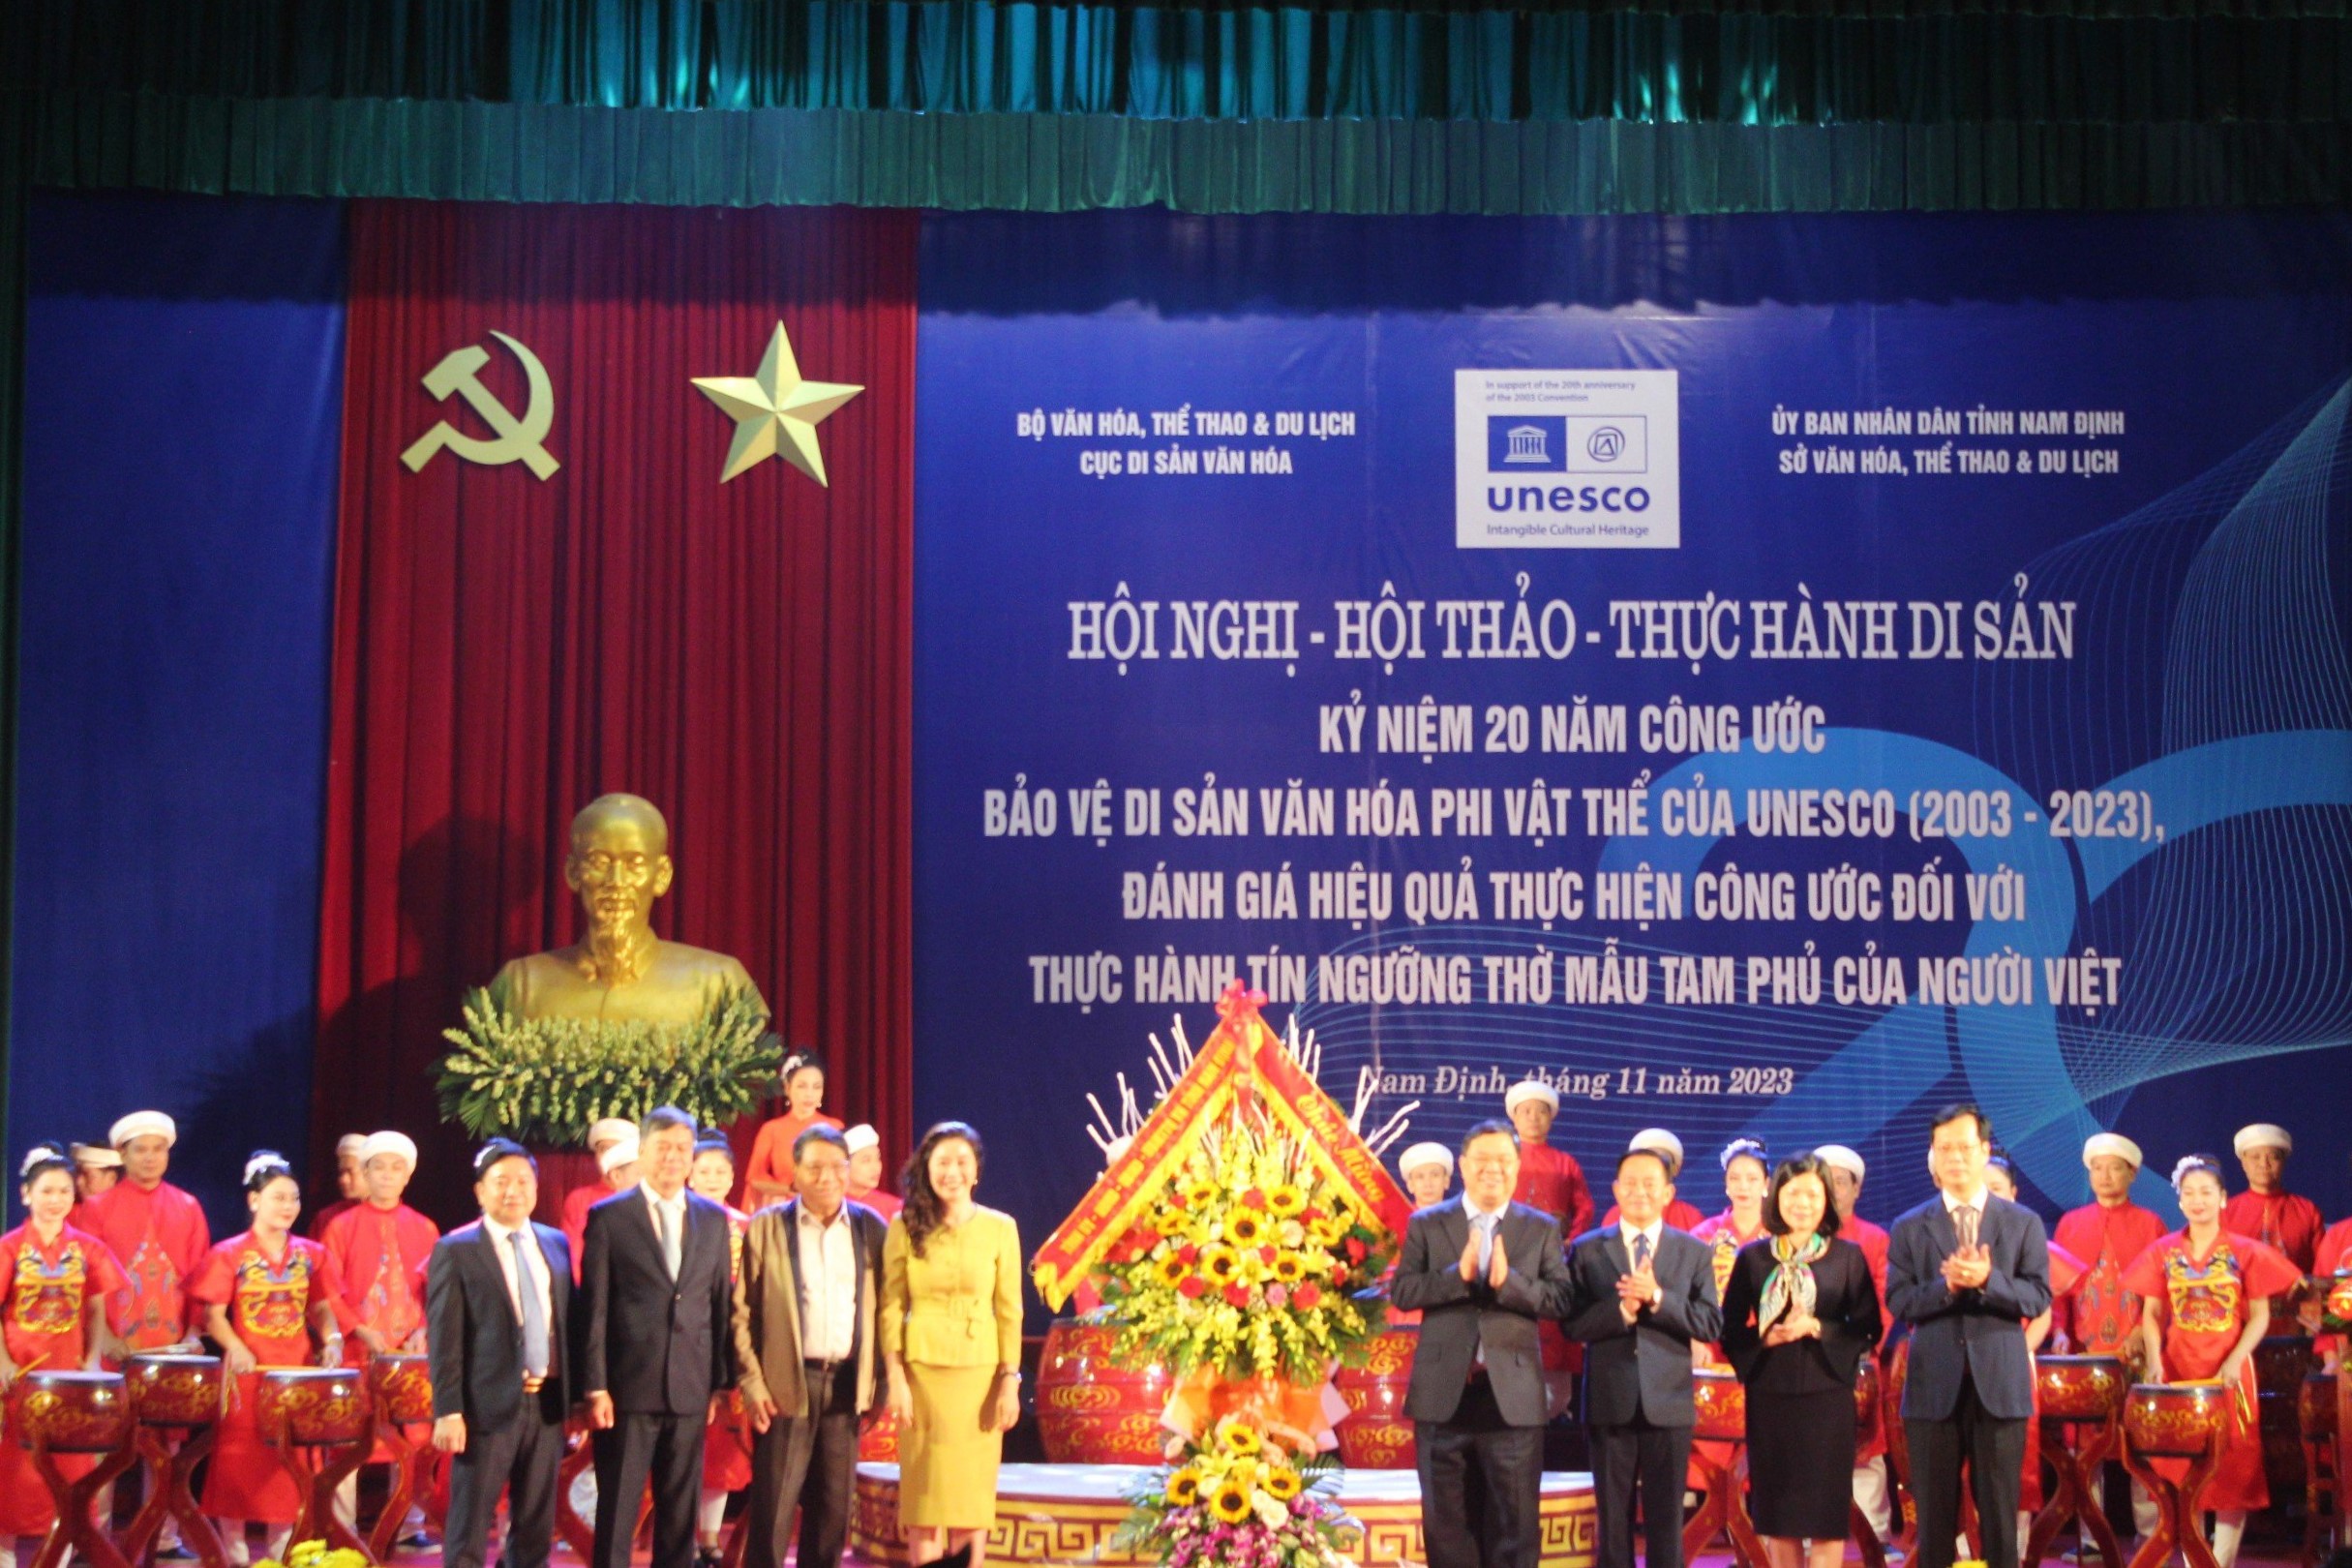 Hội thảo "Thực hành di sản Tín ngưỡng thờ Mẫu Tam phủ của người Việt" tại Nam Định - 4